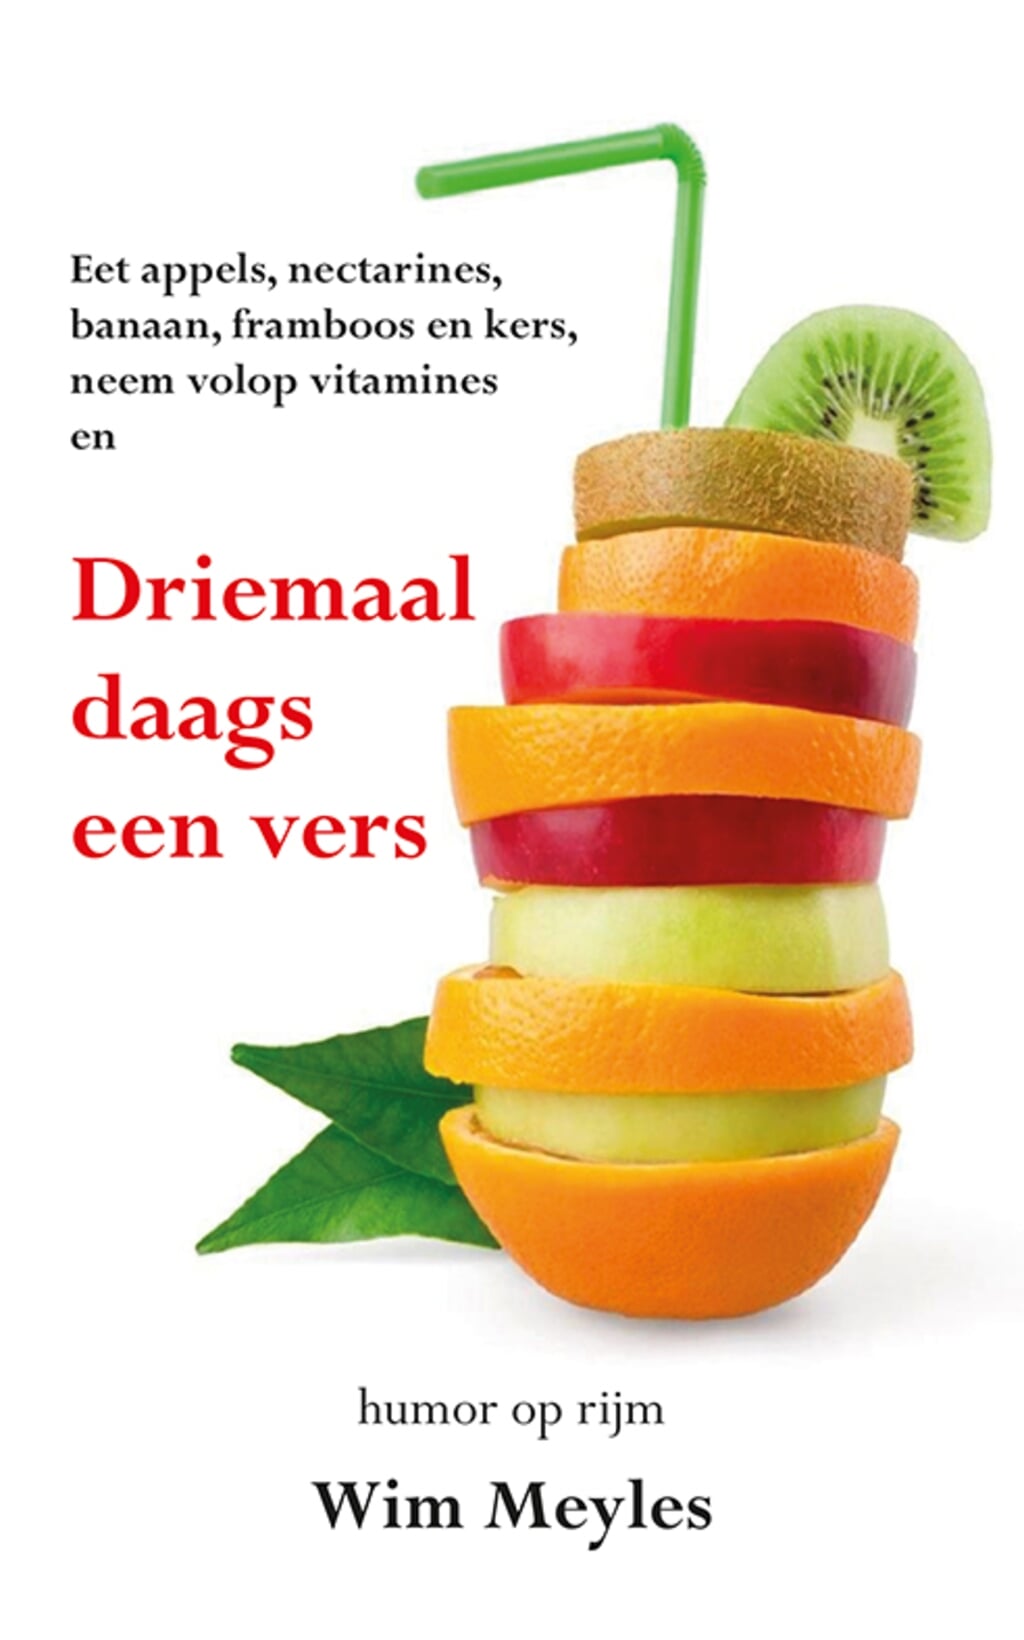 De cover van het boek van Wim Meyles.